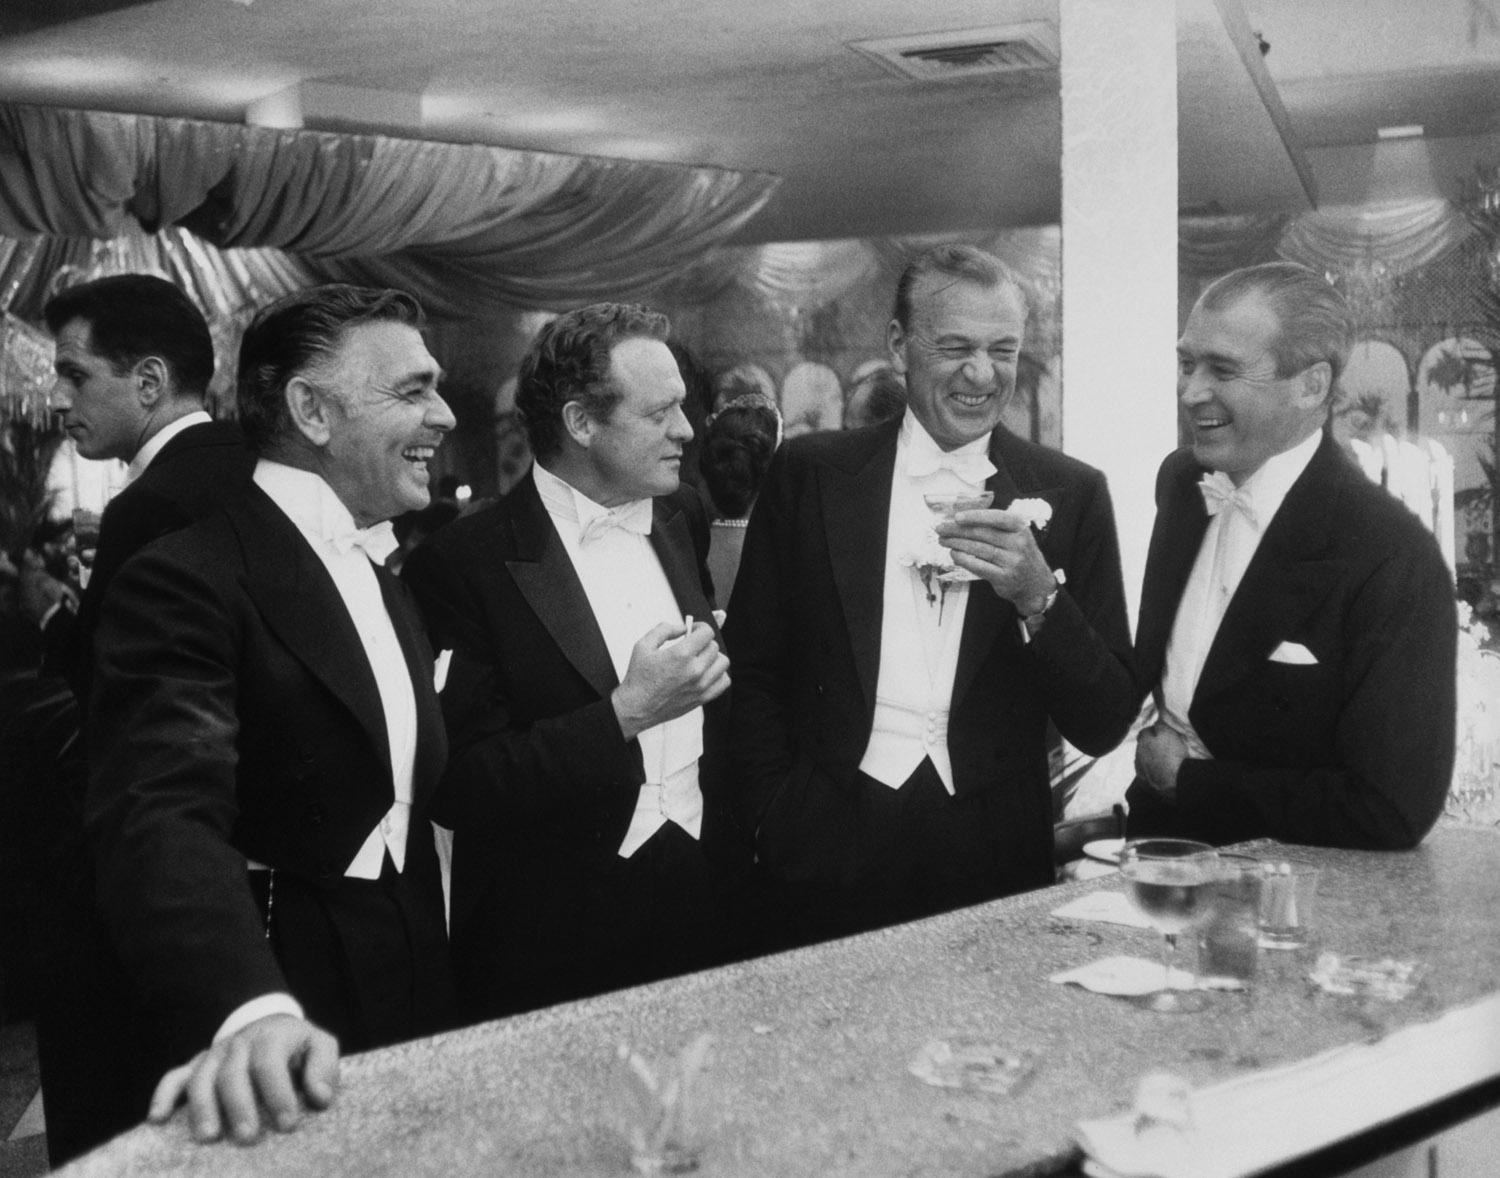 Les rois d'Hollywood 1957 
Slim Aarons Limited Estate Edition 

Clark Gable (1901 - 1960), Van Heflin (1910 - 1971), Gary Cooper (1901 - 1961) et James Stewart (1908 - 1997) 
s'amusant d'une plaisanterie lors d'une fête du Nouvel An organisée chez